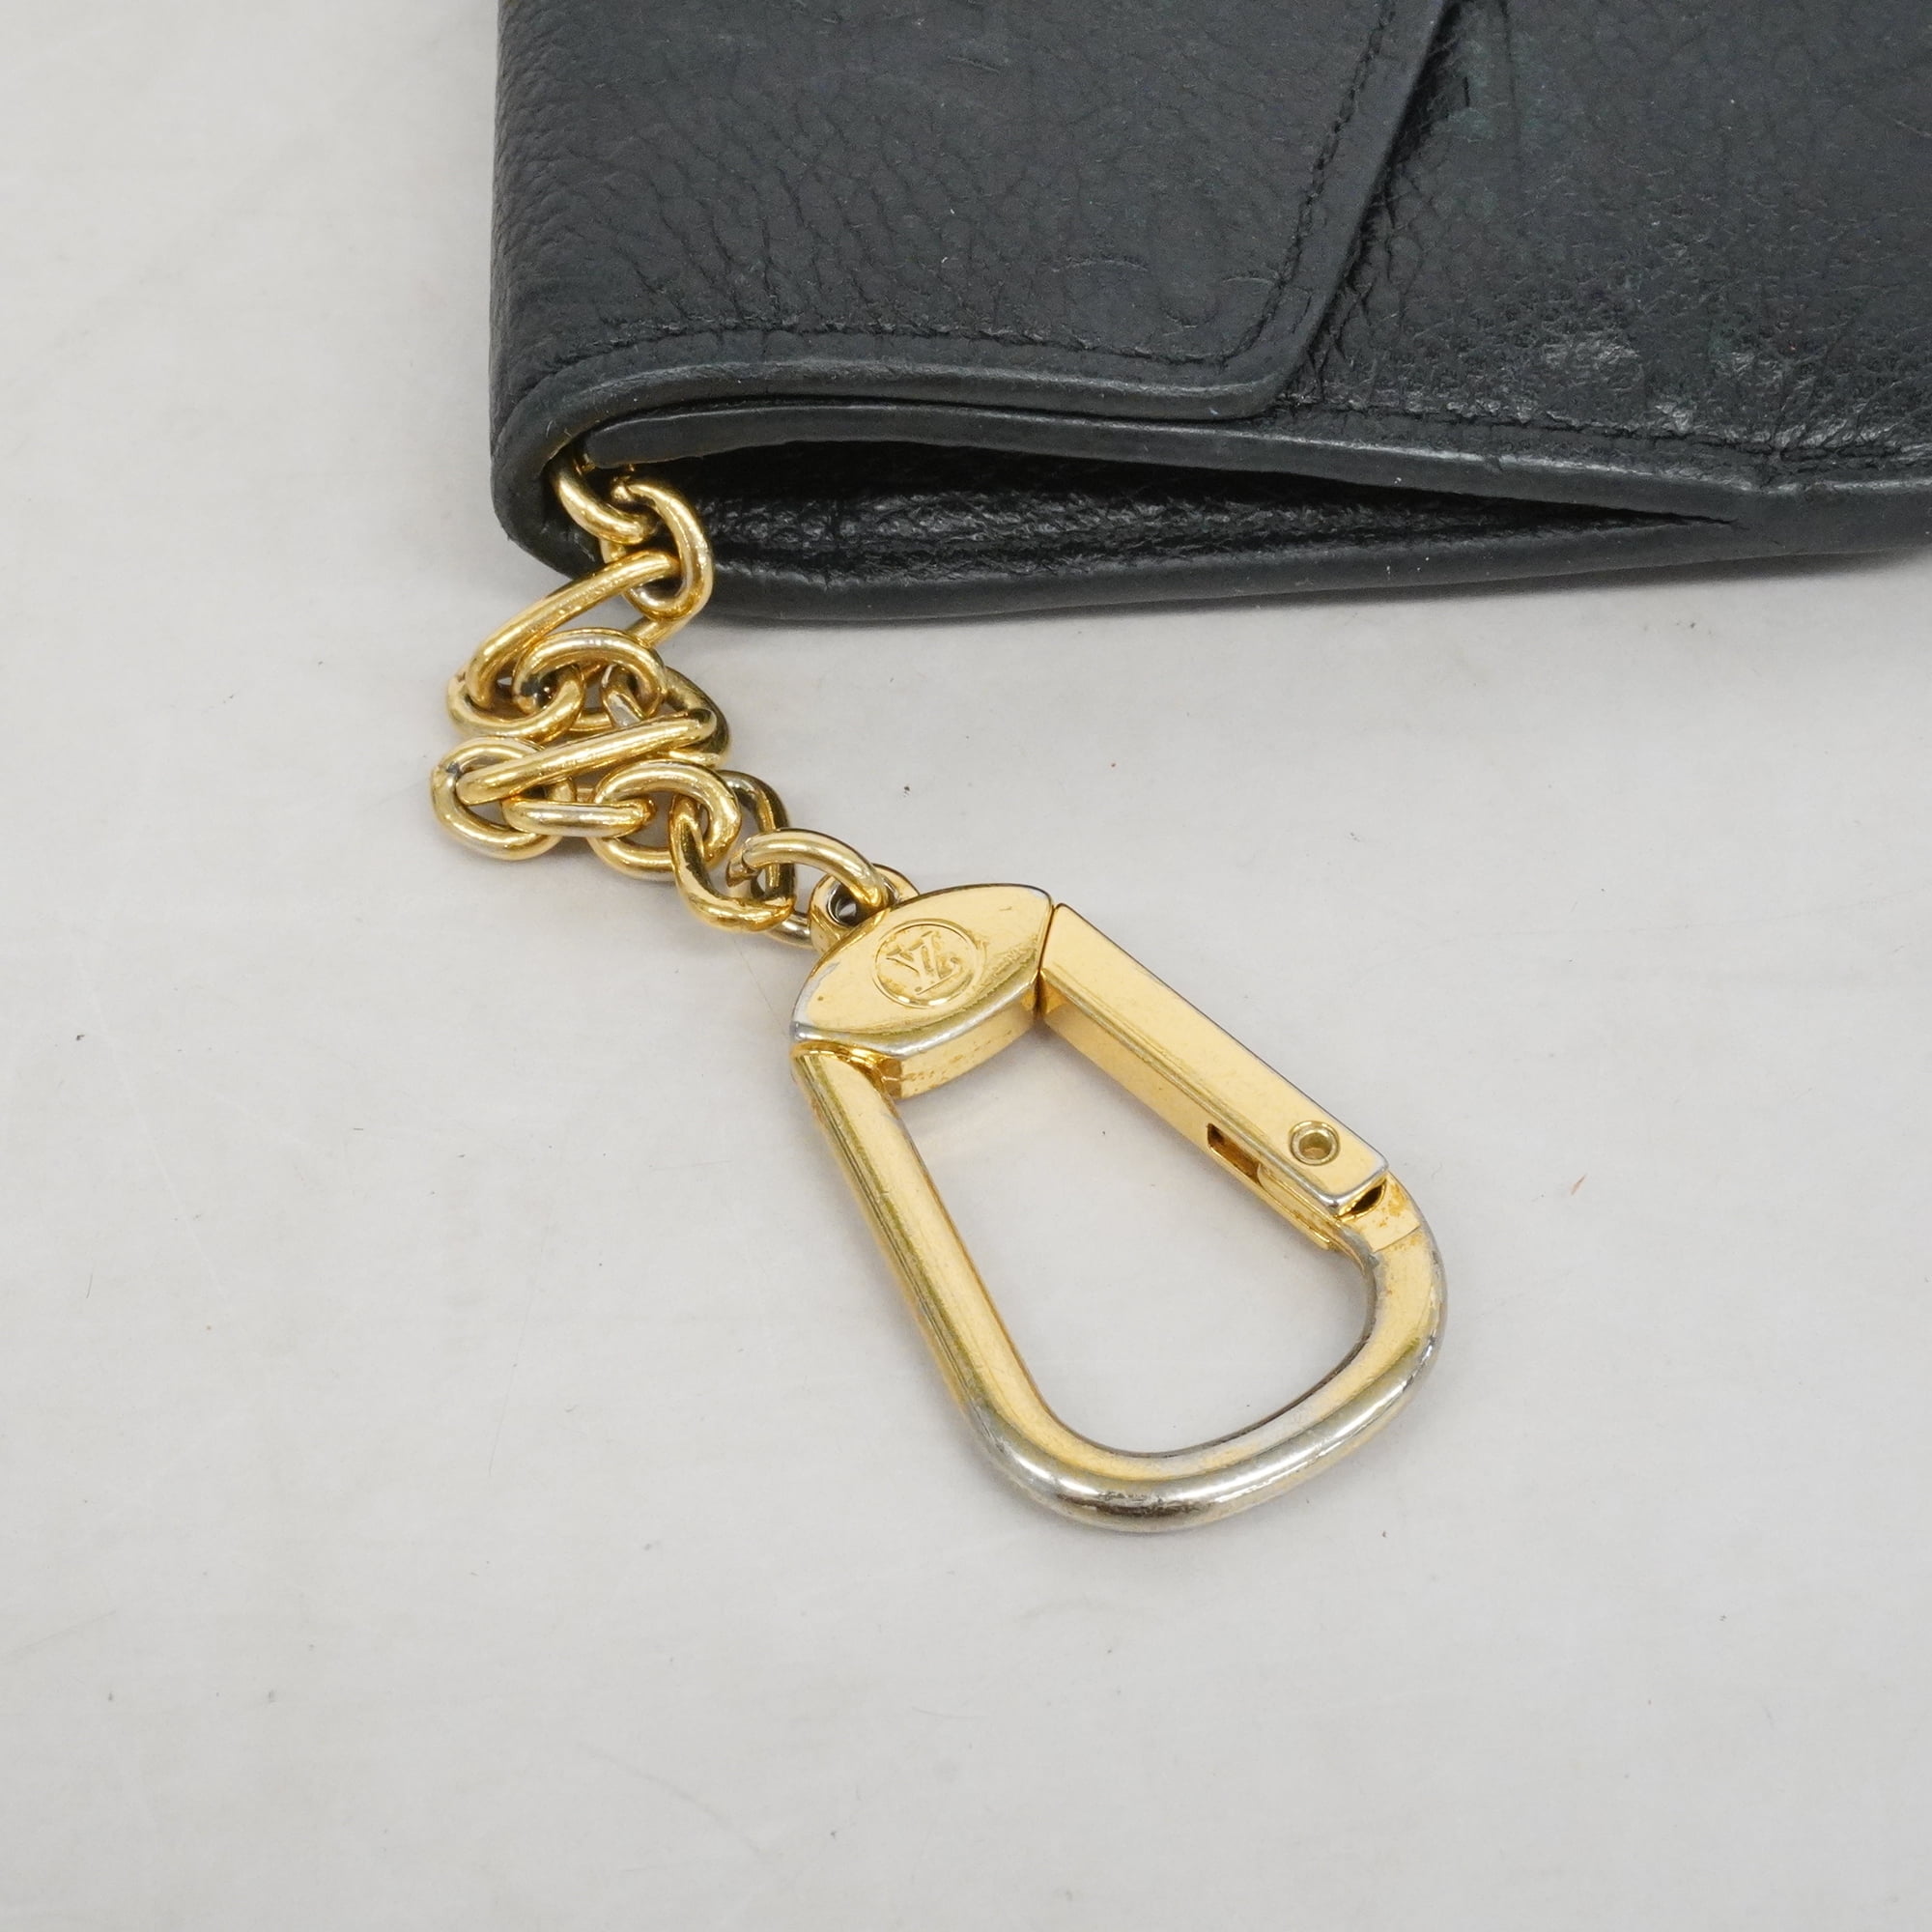 Louis Vuitton Monogram Empreinte Pochette Cles M61566 Women's Monogram  Empreinte Coin Purse/coin Case Grape